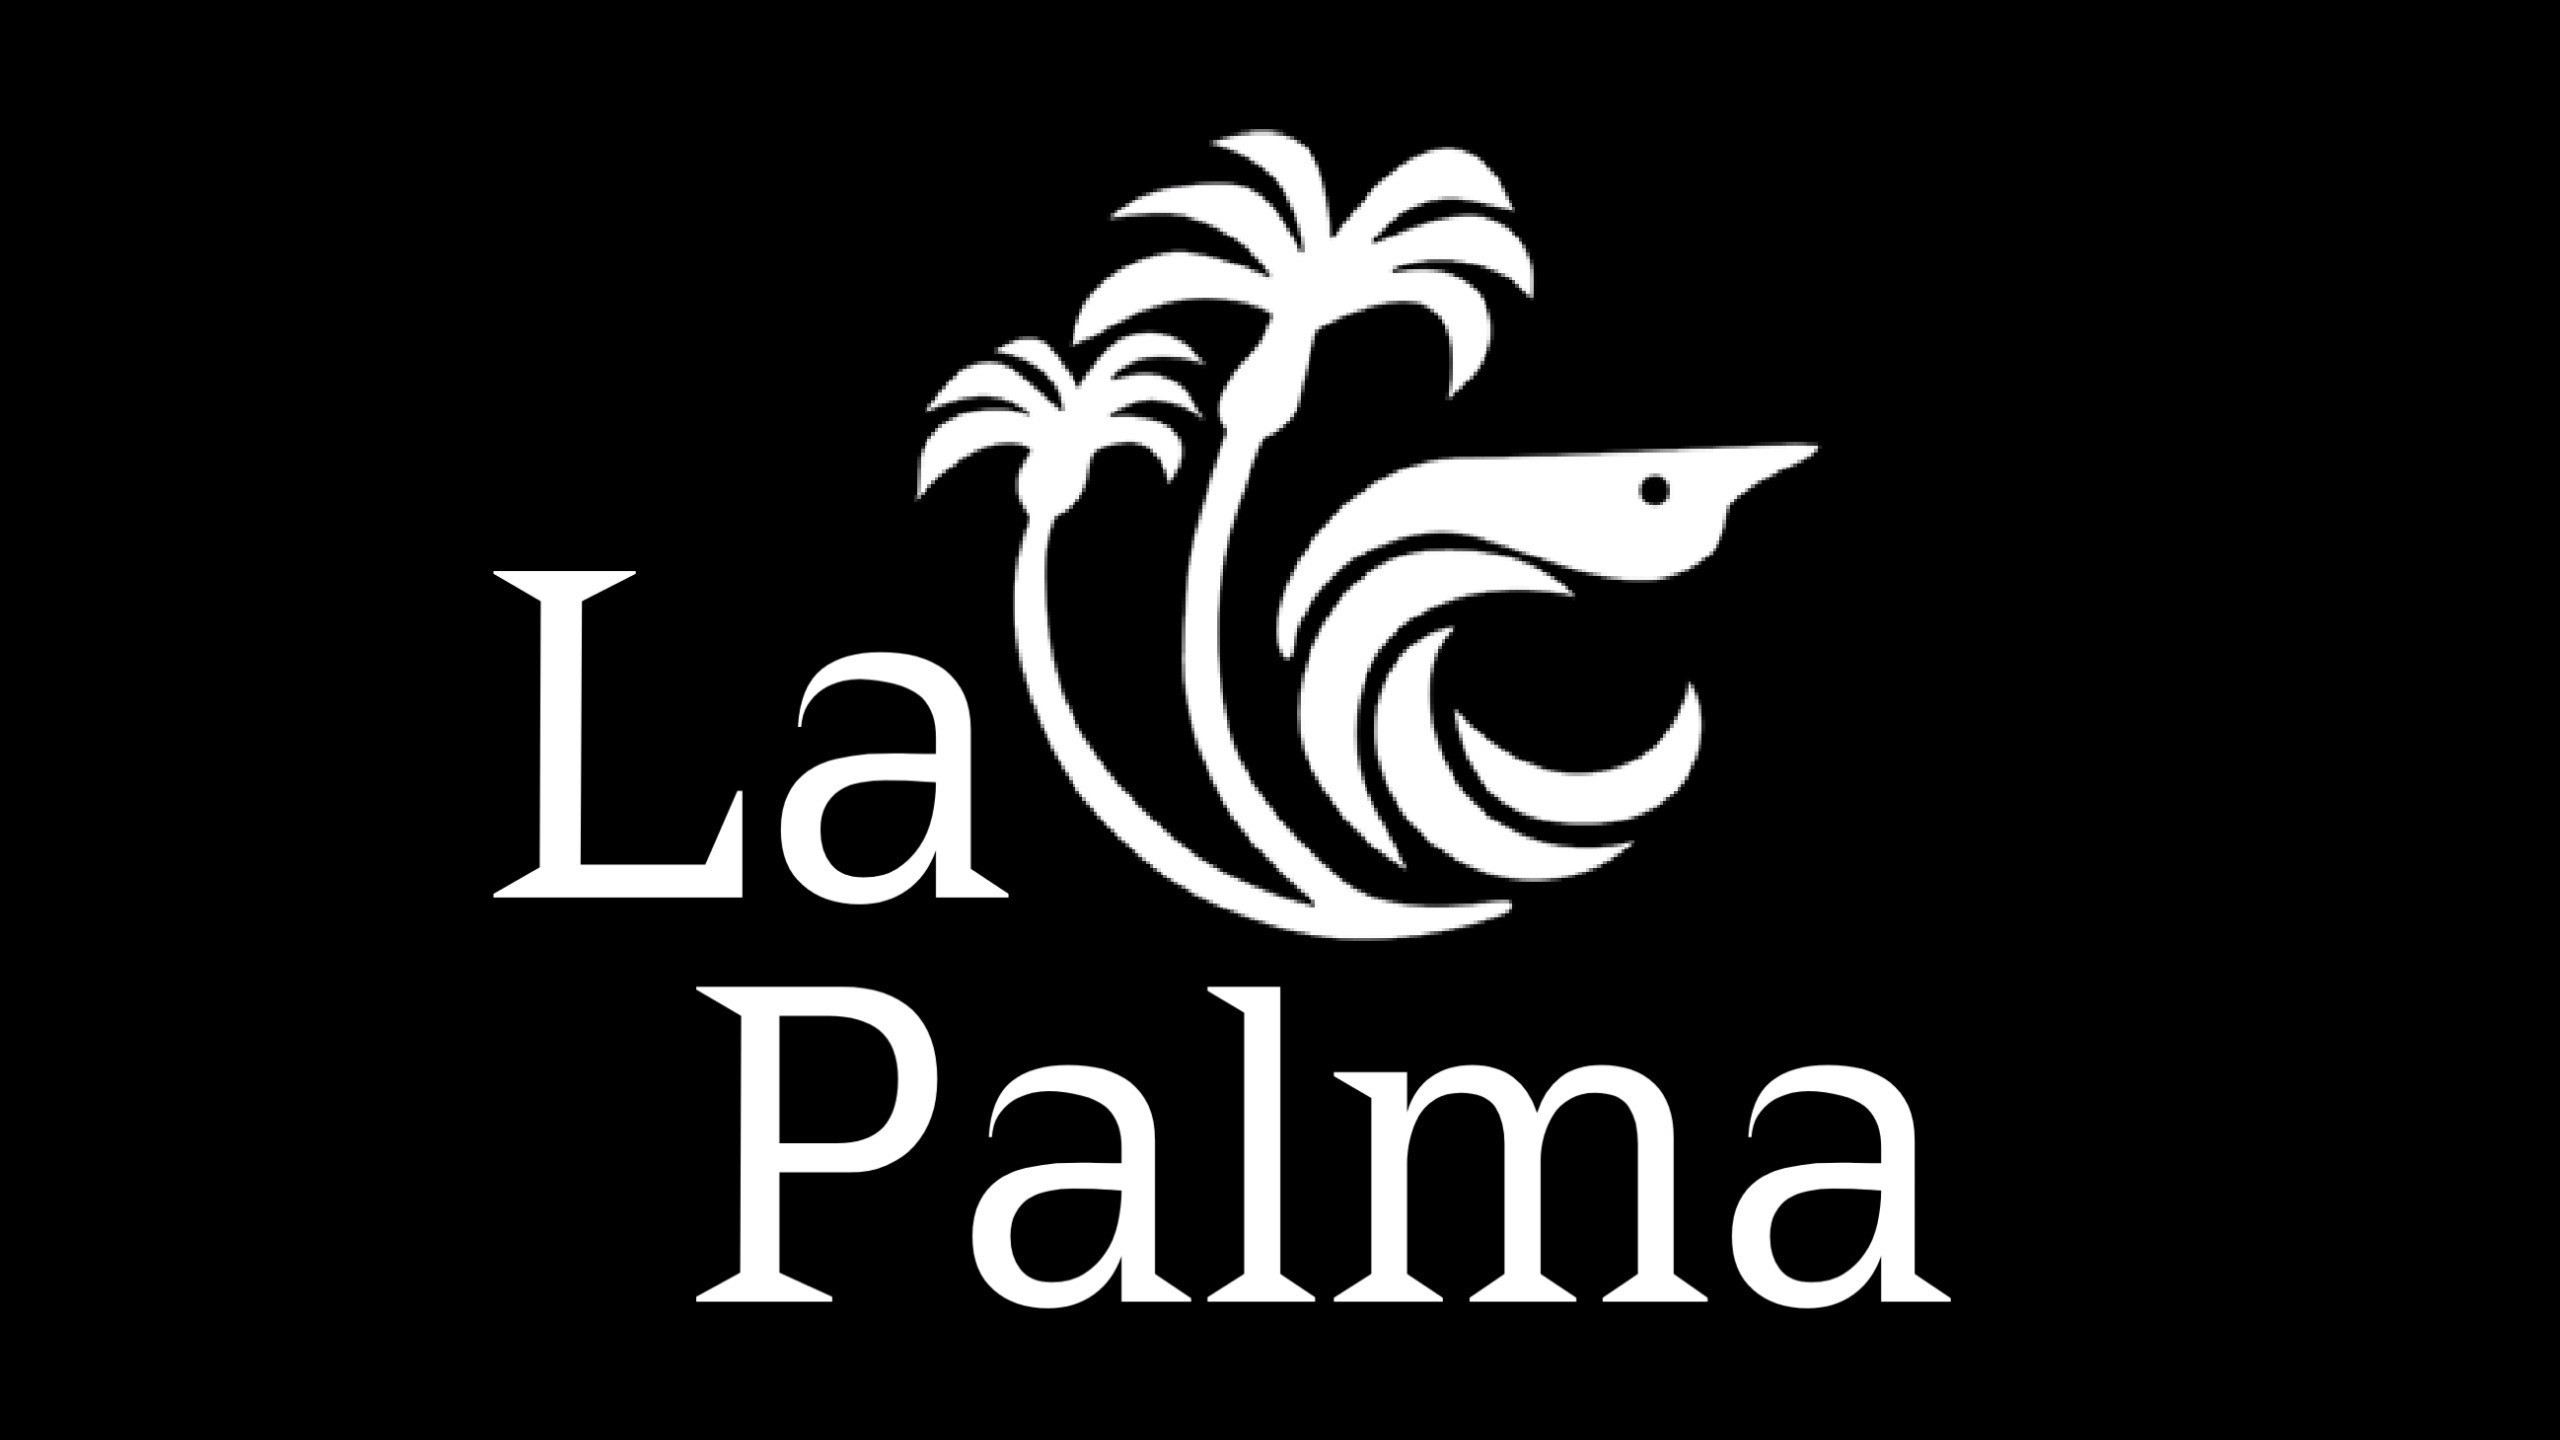 La Palma La 11012 Main Street